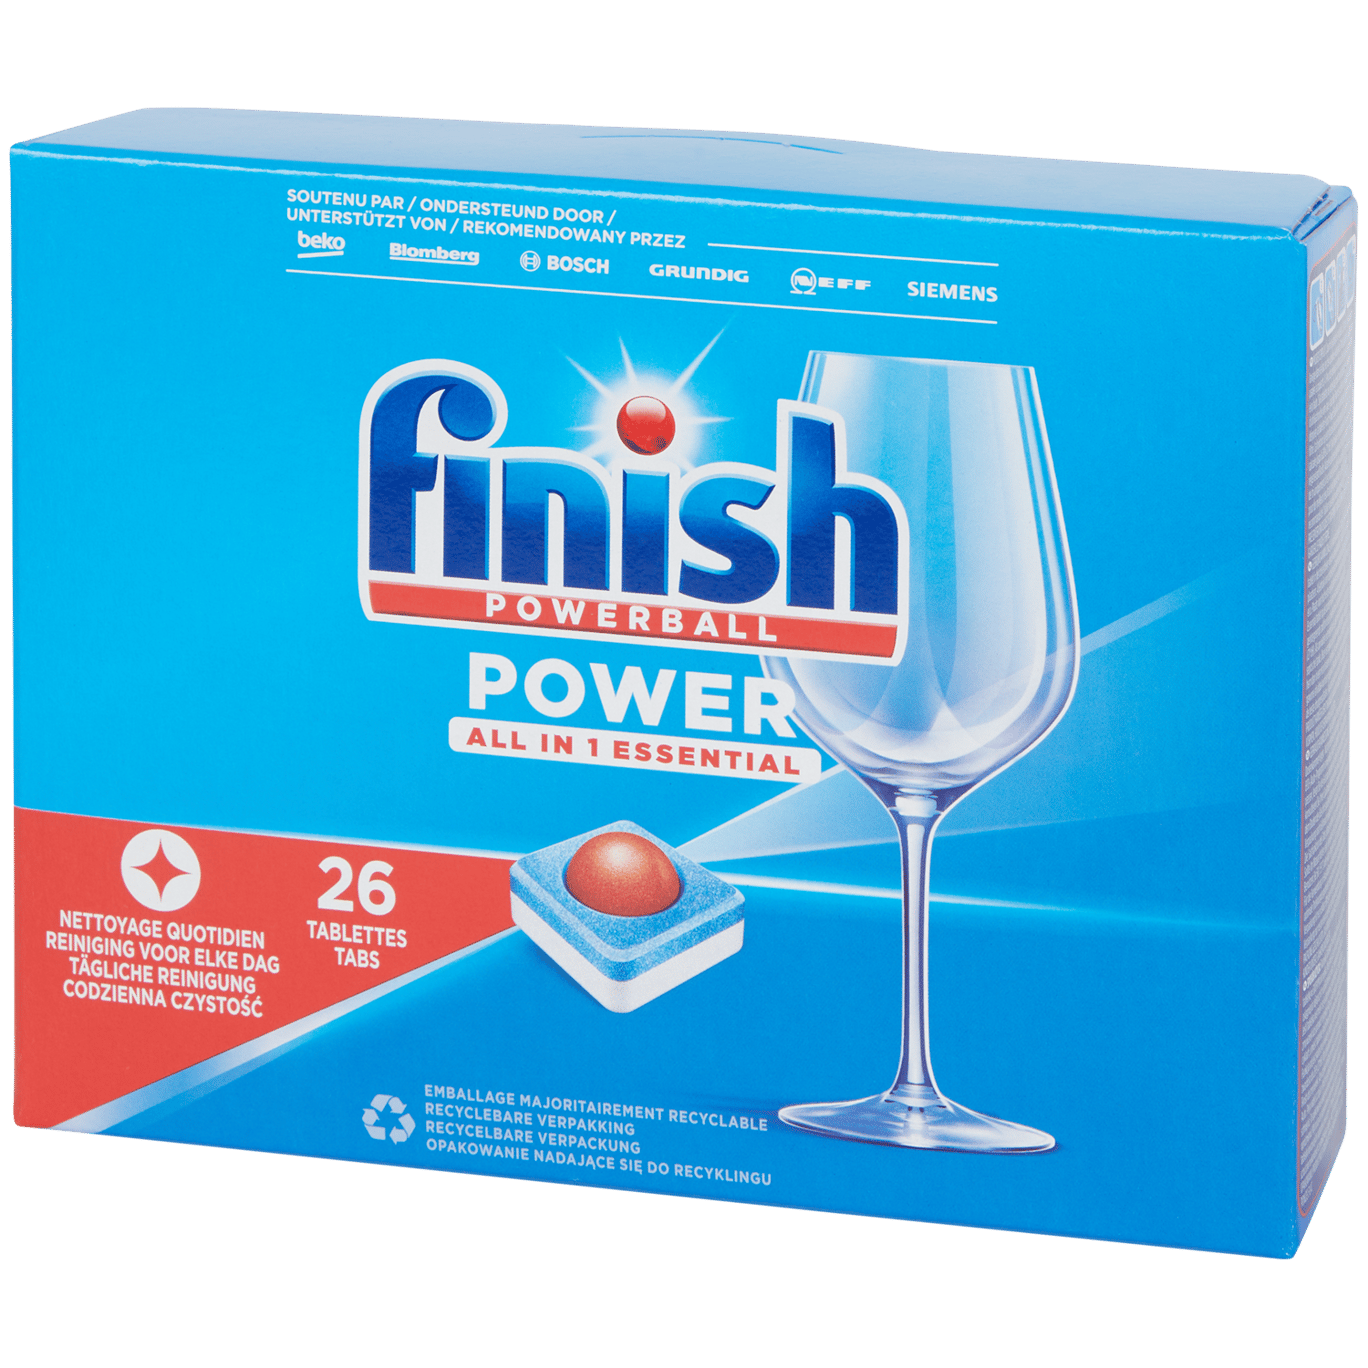 Pastiglie lavastoviglie Finish Powerball Power All-in-1